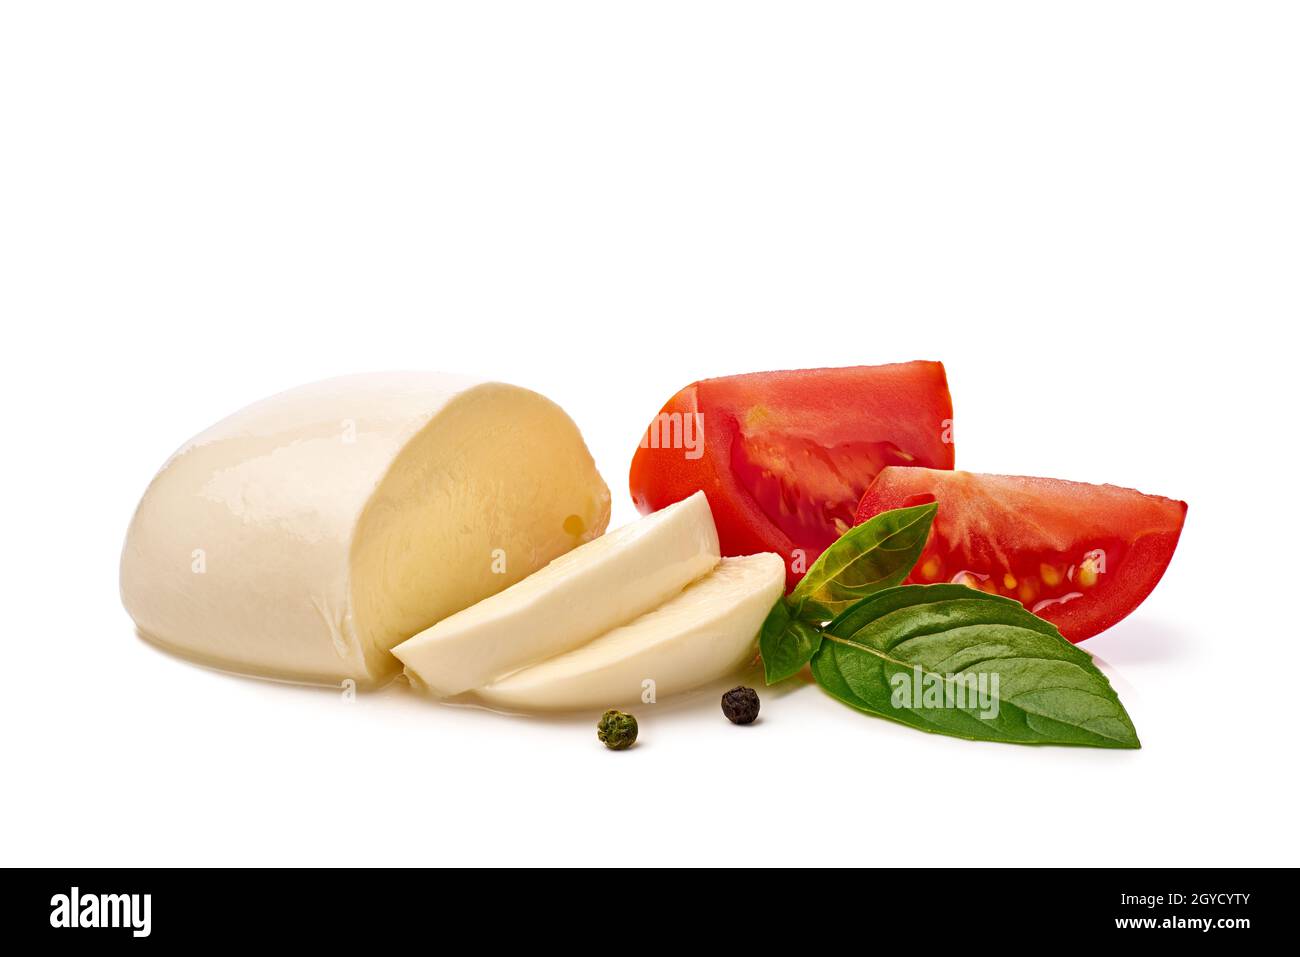 Frisch geschnittener Mozzarella-Käse mit Tomaten und Basilikum auf Weiß Stockfoto